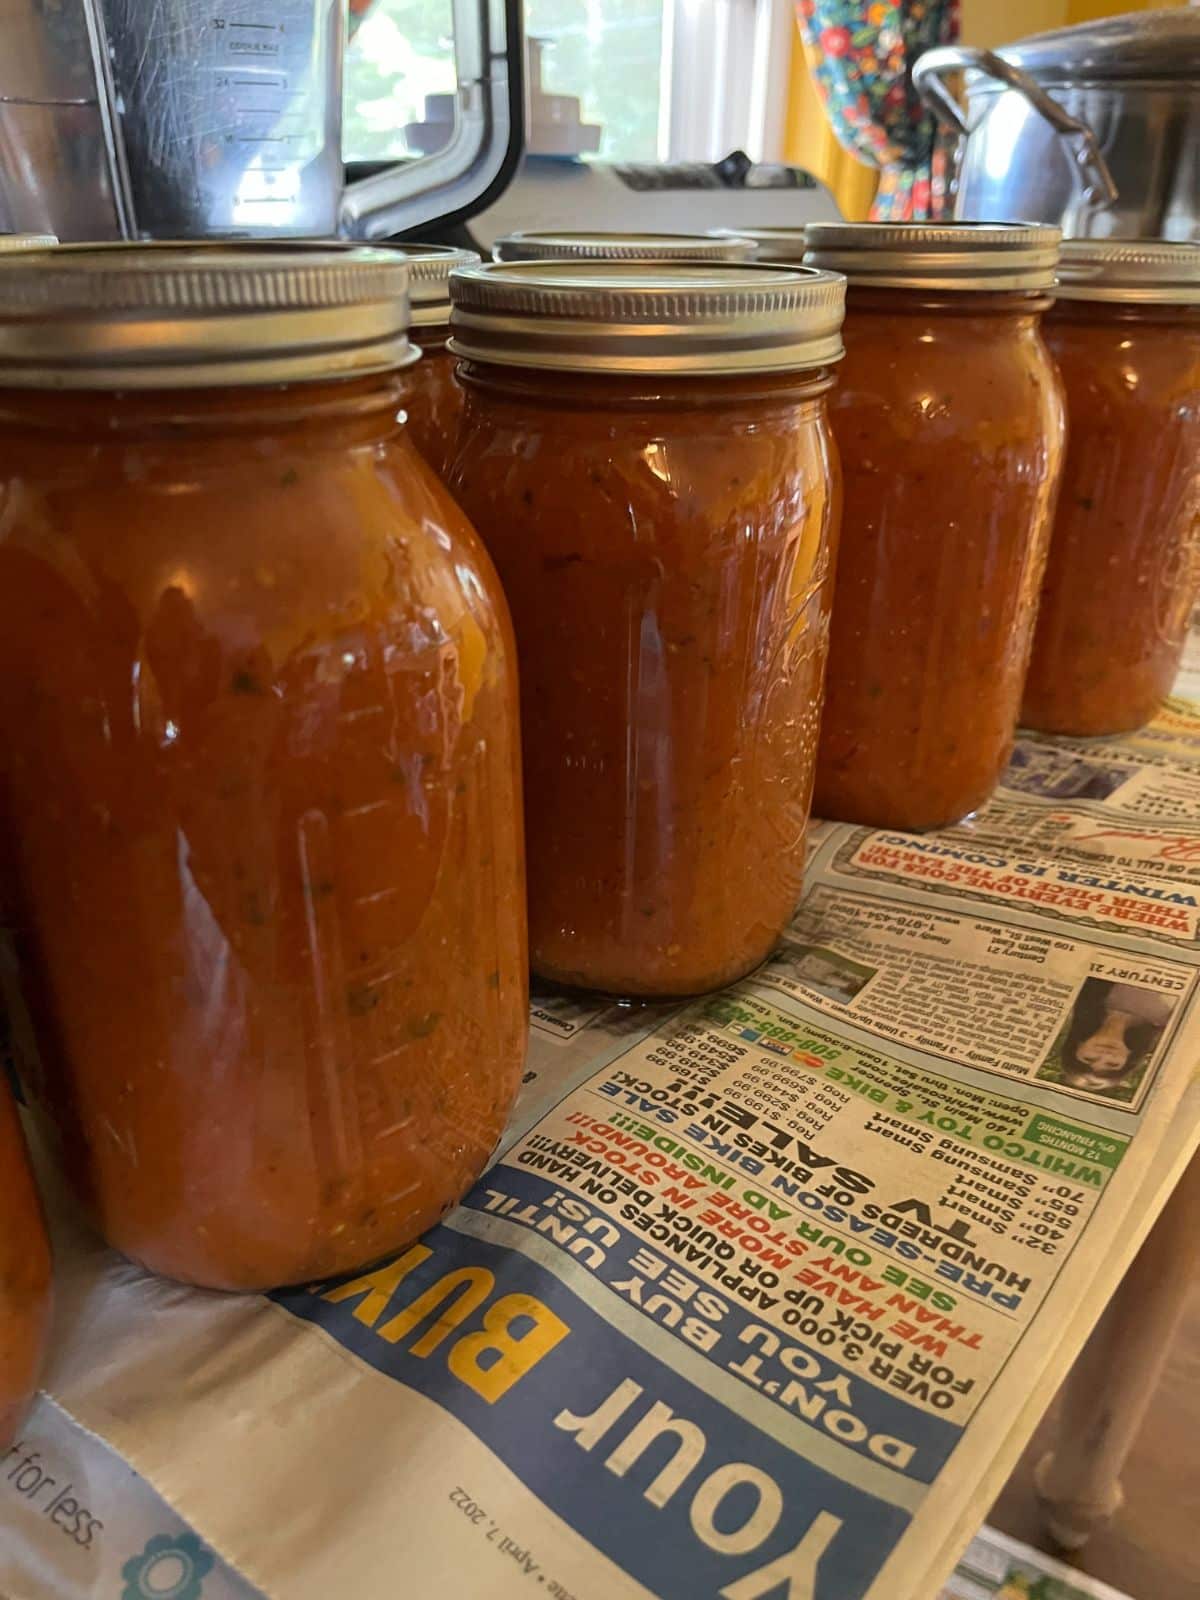 Canned jars of roasted tomato base